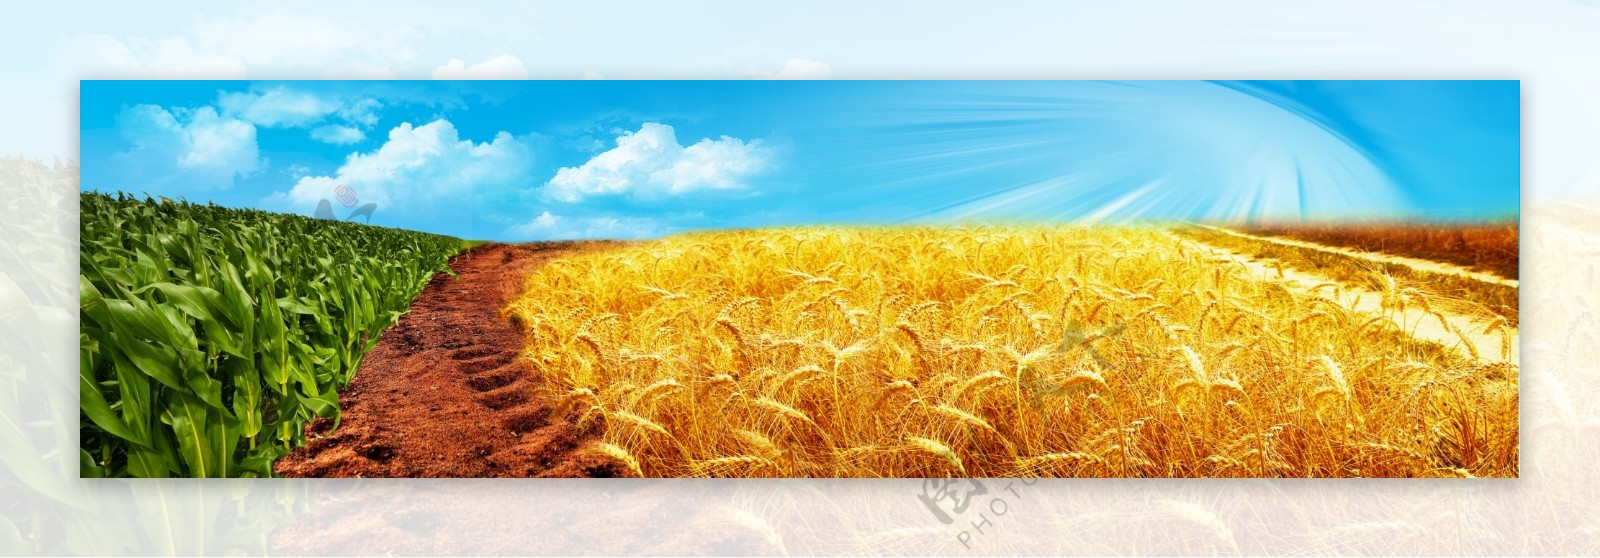 小麦地玉米地组合